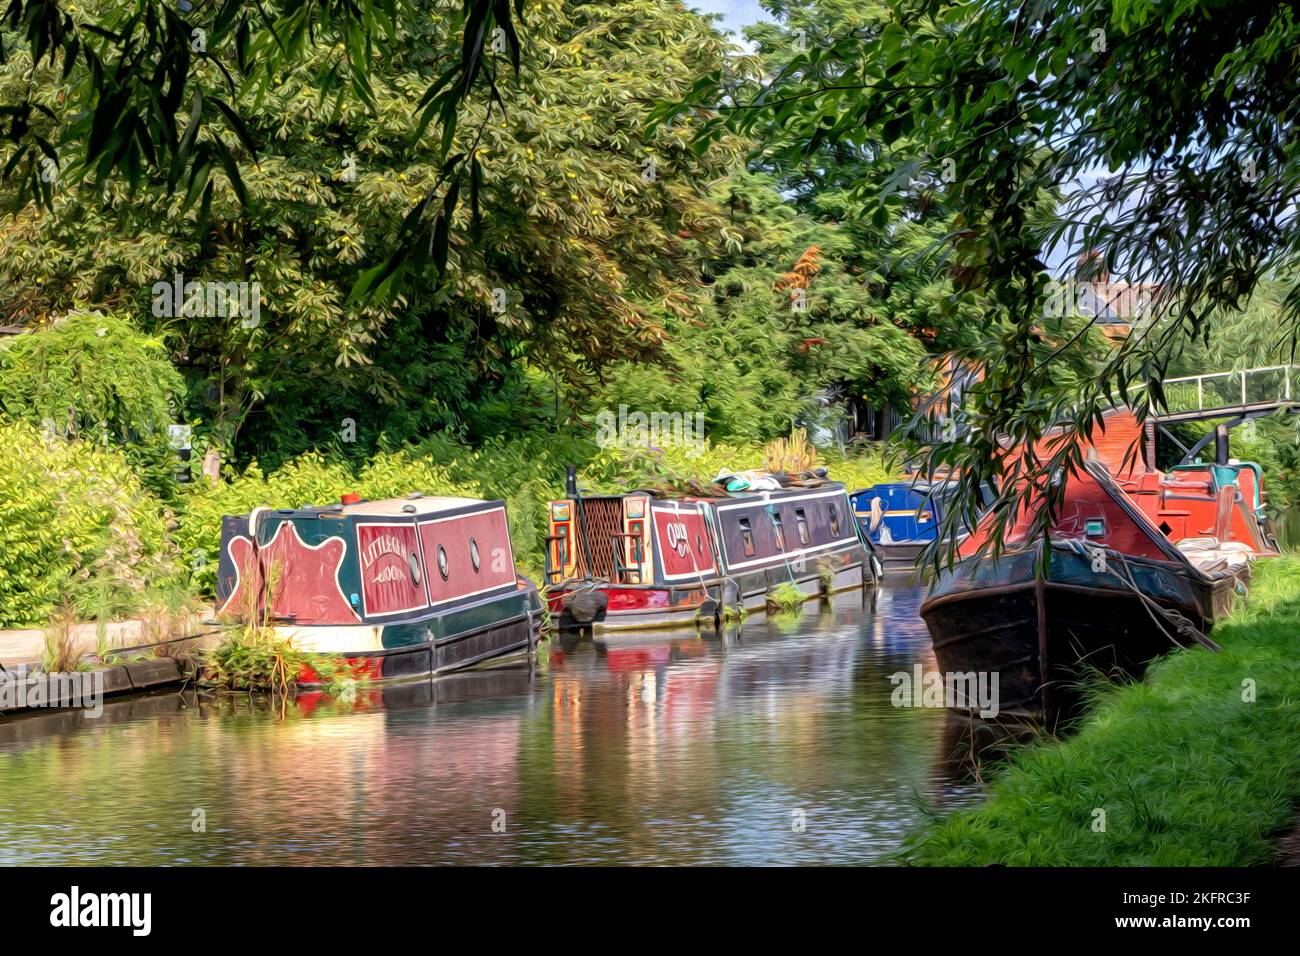 Barques de rowboats sur le Grand Union Canal, Aylesbury, Buckinghamshirem Angleterre - peinture numérique à l'huile Banque D'Images